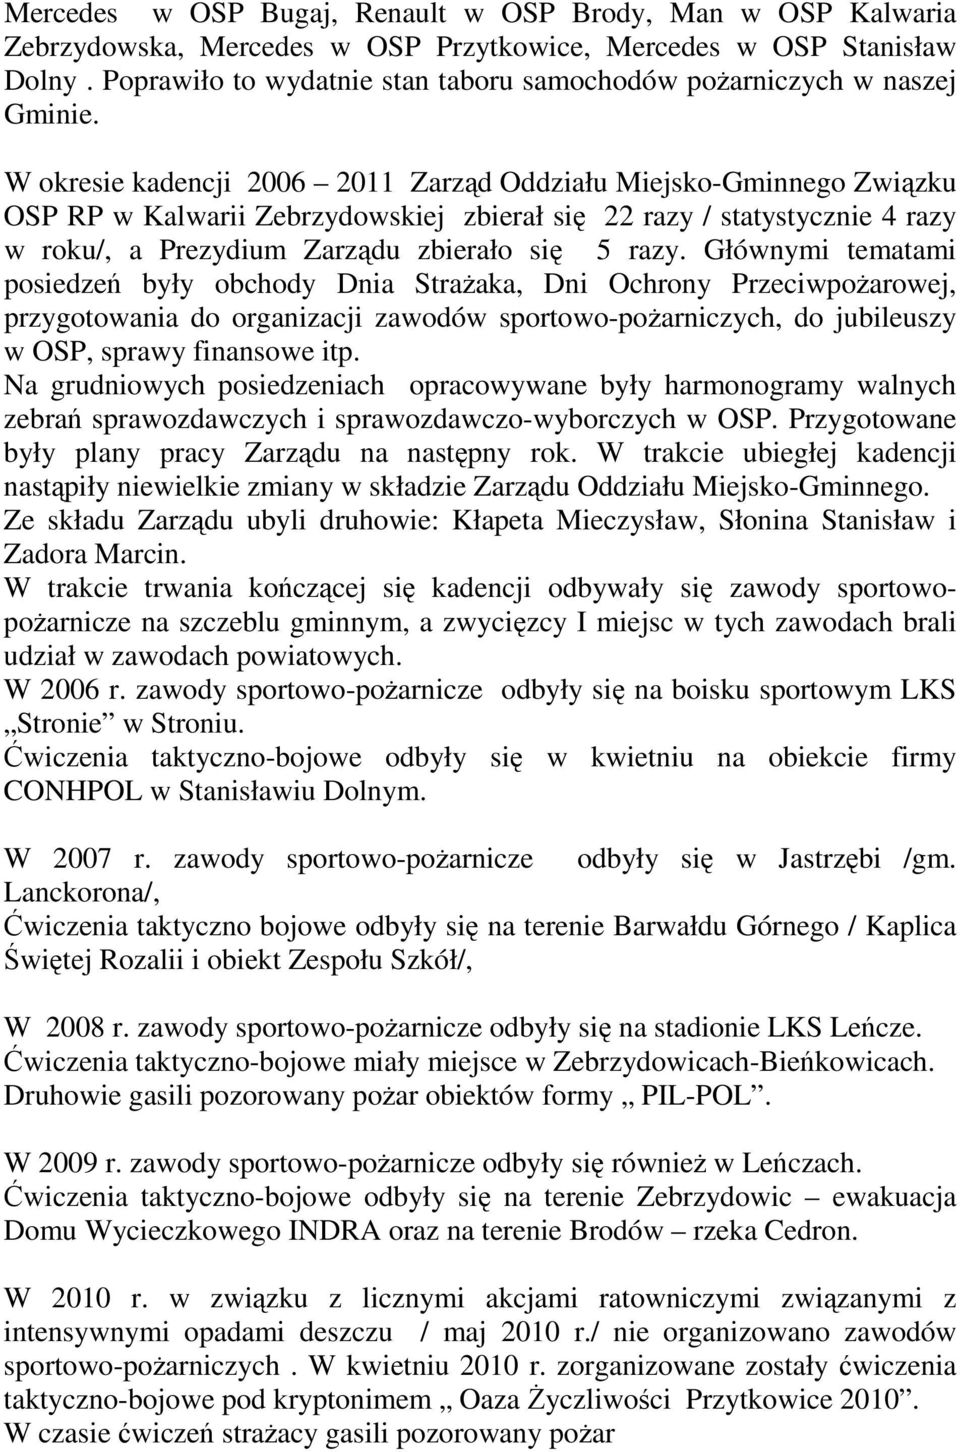 W okresie kadencji 2006 2011 Zarząd Oddziału Miejsko-Gminnego Związku OSP RP w Kalwarii Zebrzydowskiej zbierał się 22 razy / statystycznie 4 razy w roku/, a Prezydium Zarządu zbierało się 5 razy.